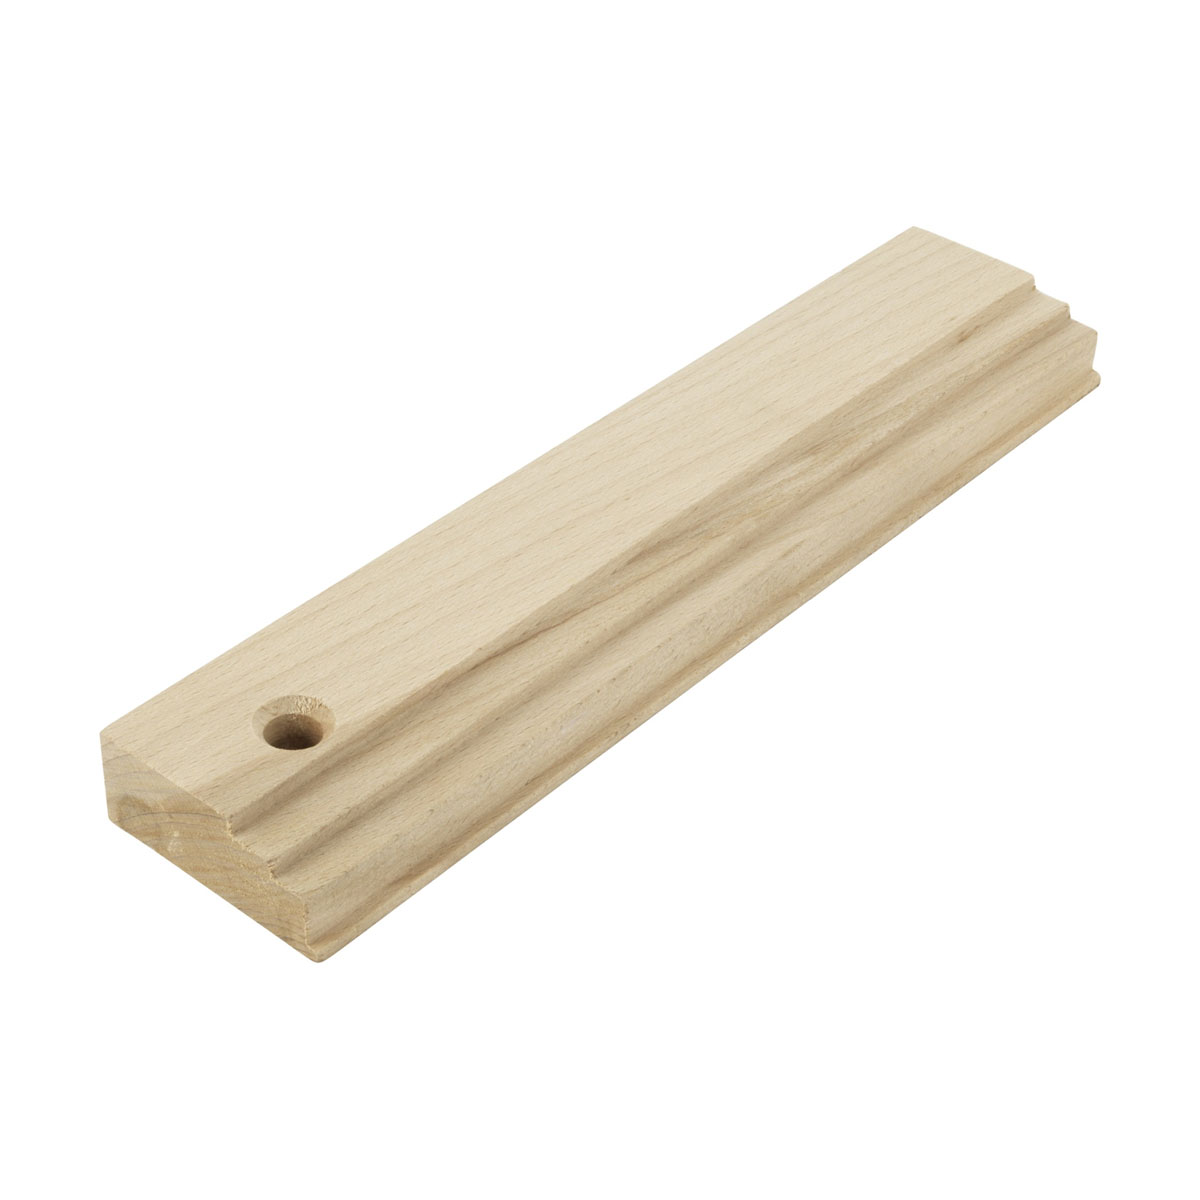 Taco de madera para ajustar suelos laminados